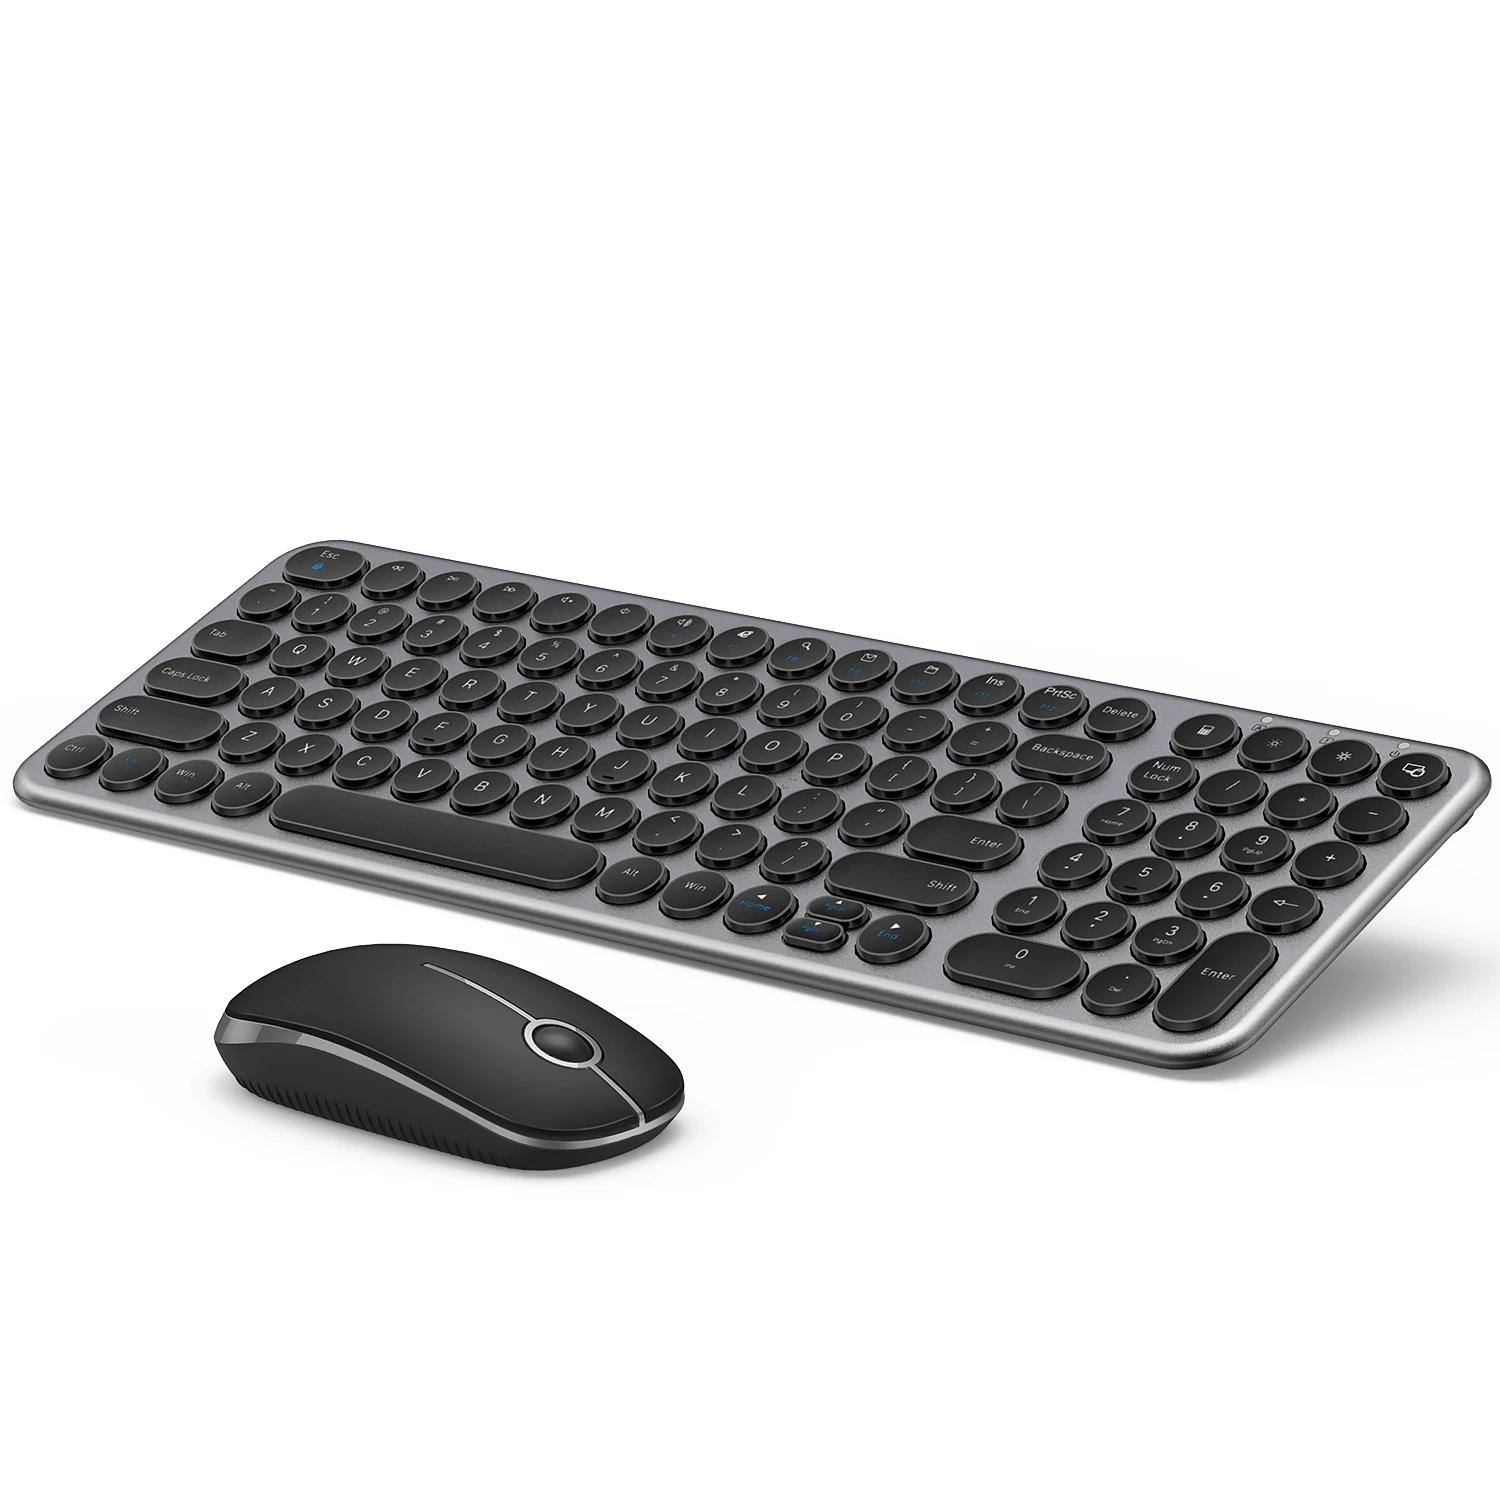 

Клавиатура и мышь Jelly Comb беспроводные эргономичные, 2,4 ГГц, с круглыми клавишами